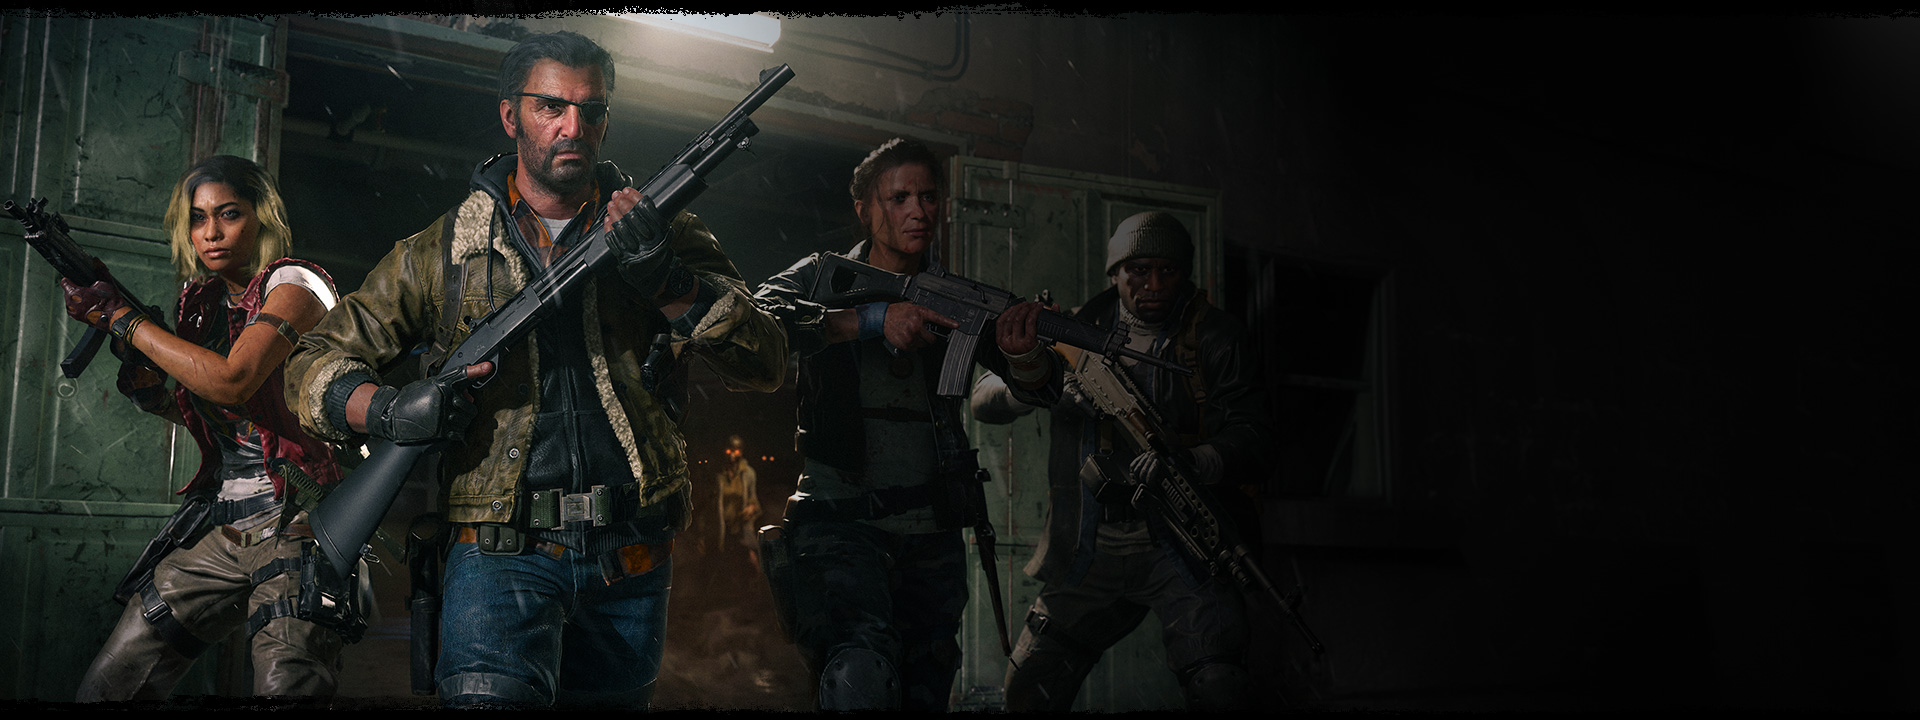 Cuatro personajes salen de un almacén con sus armas levantadas mientras un zombi está detrás de ellos con ojos naranjas brillantes.